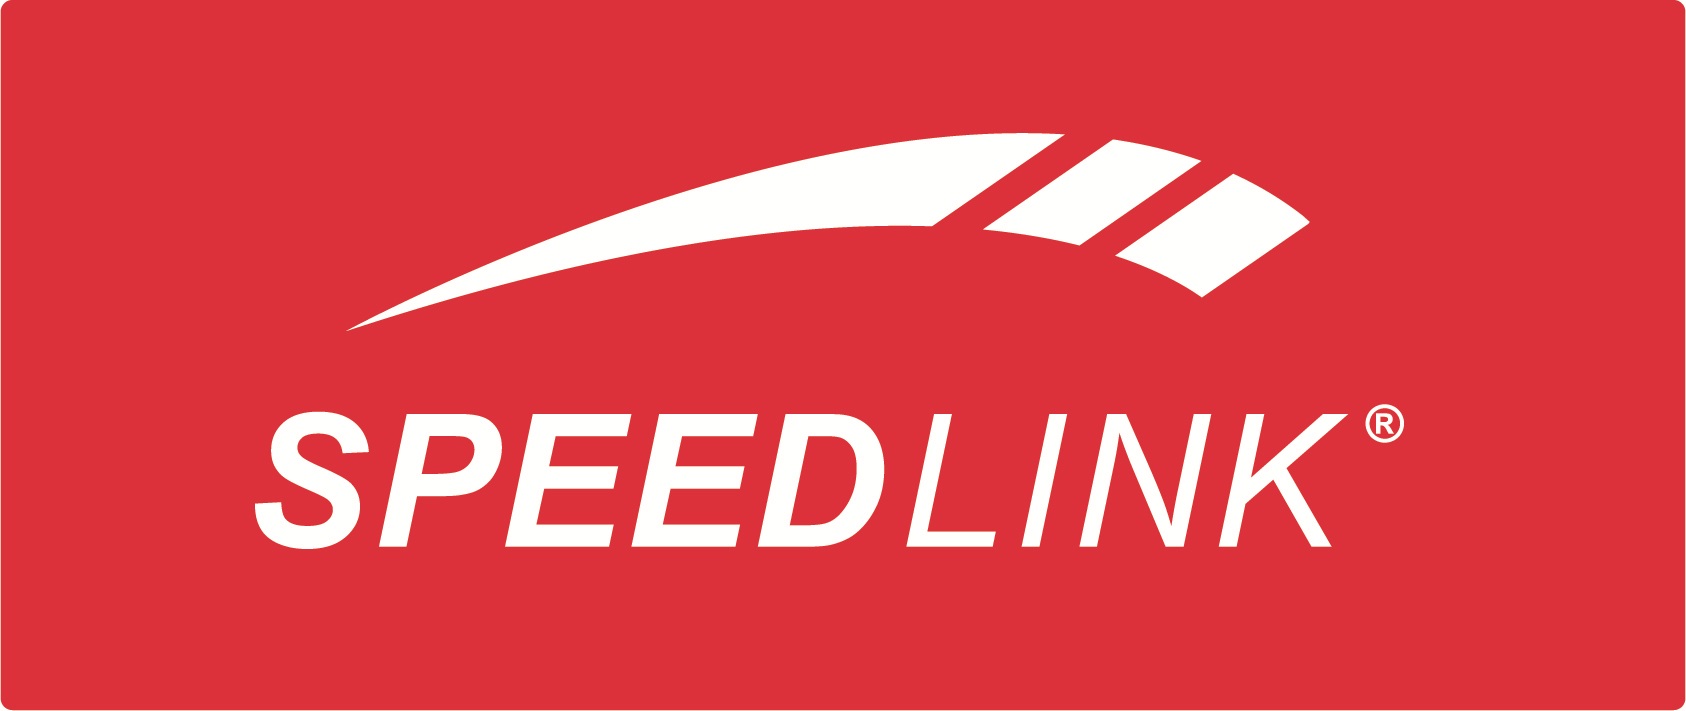 SpeedLink Methron 2.1 Subwoofer System – Test